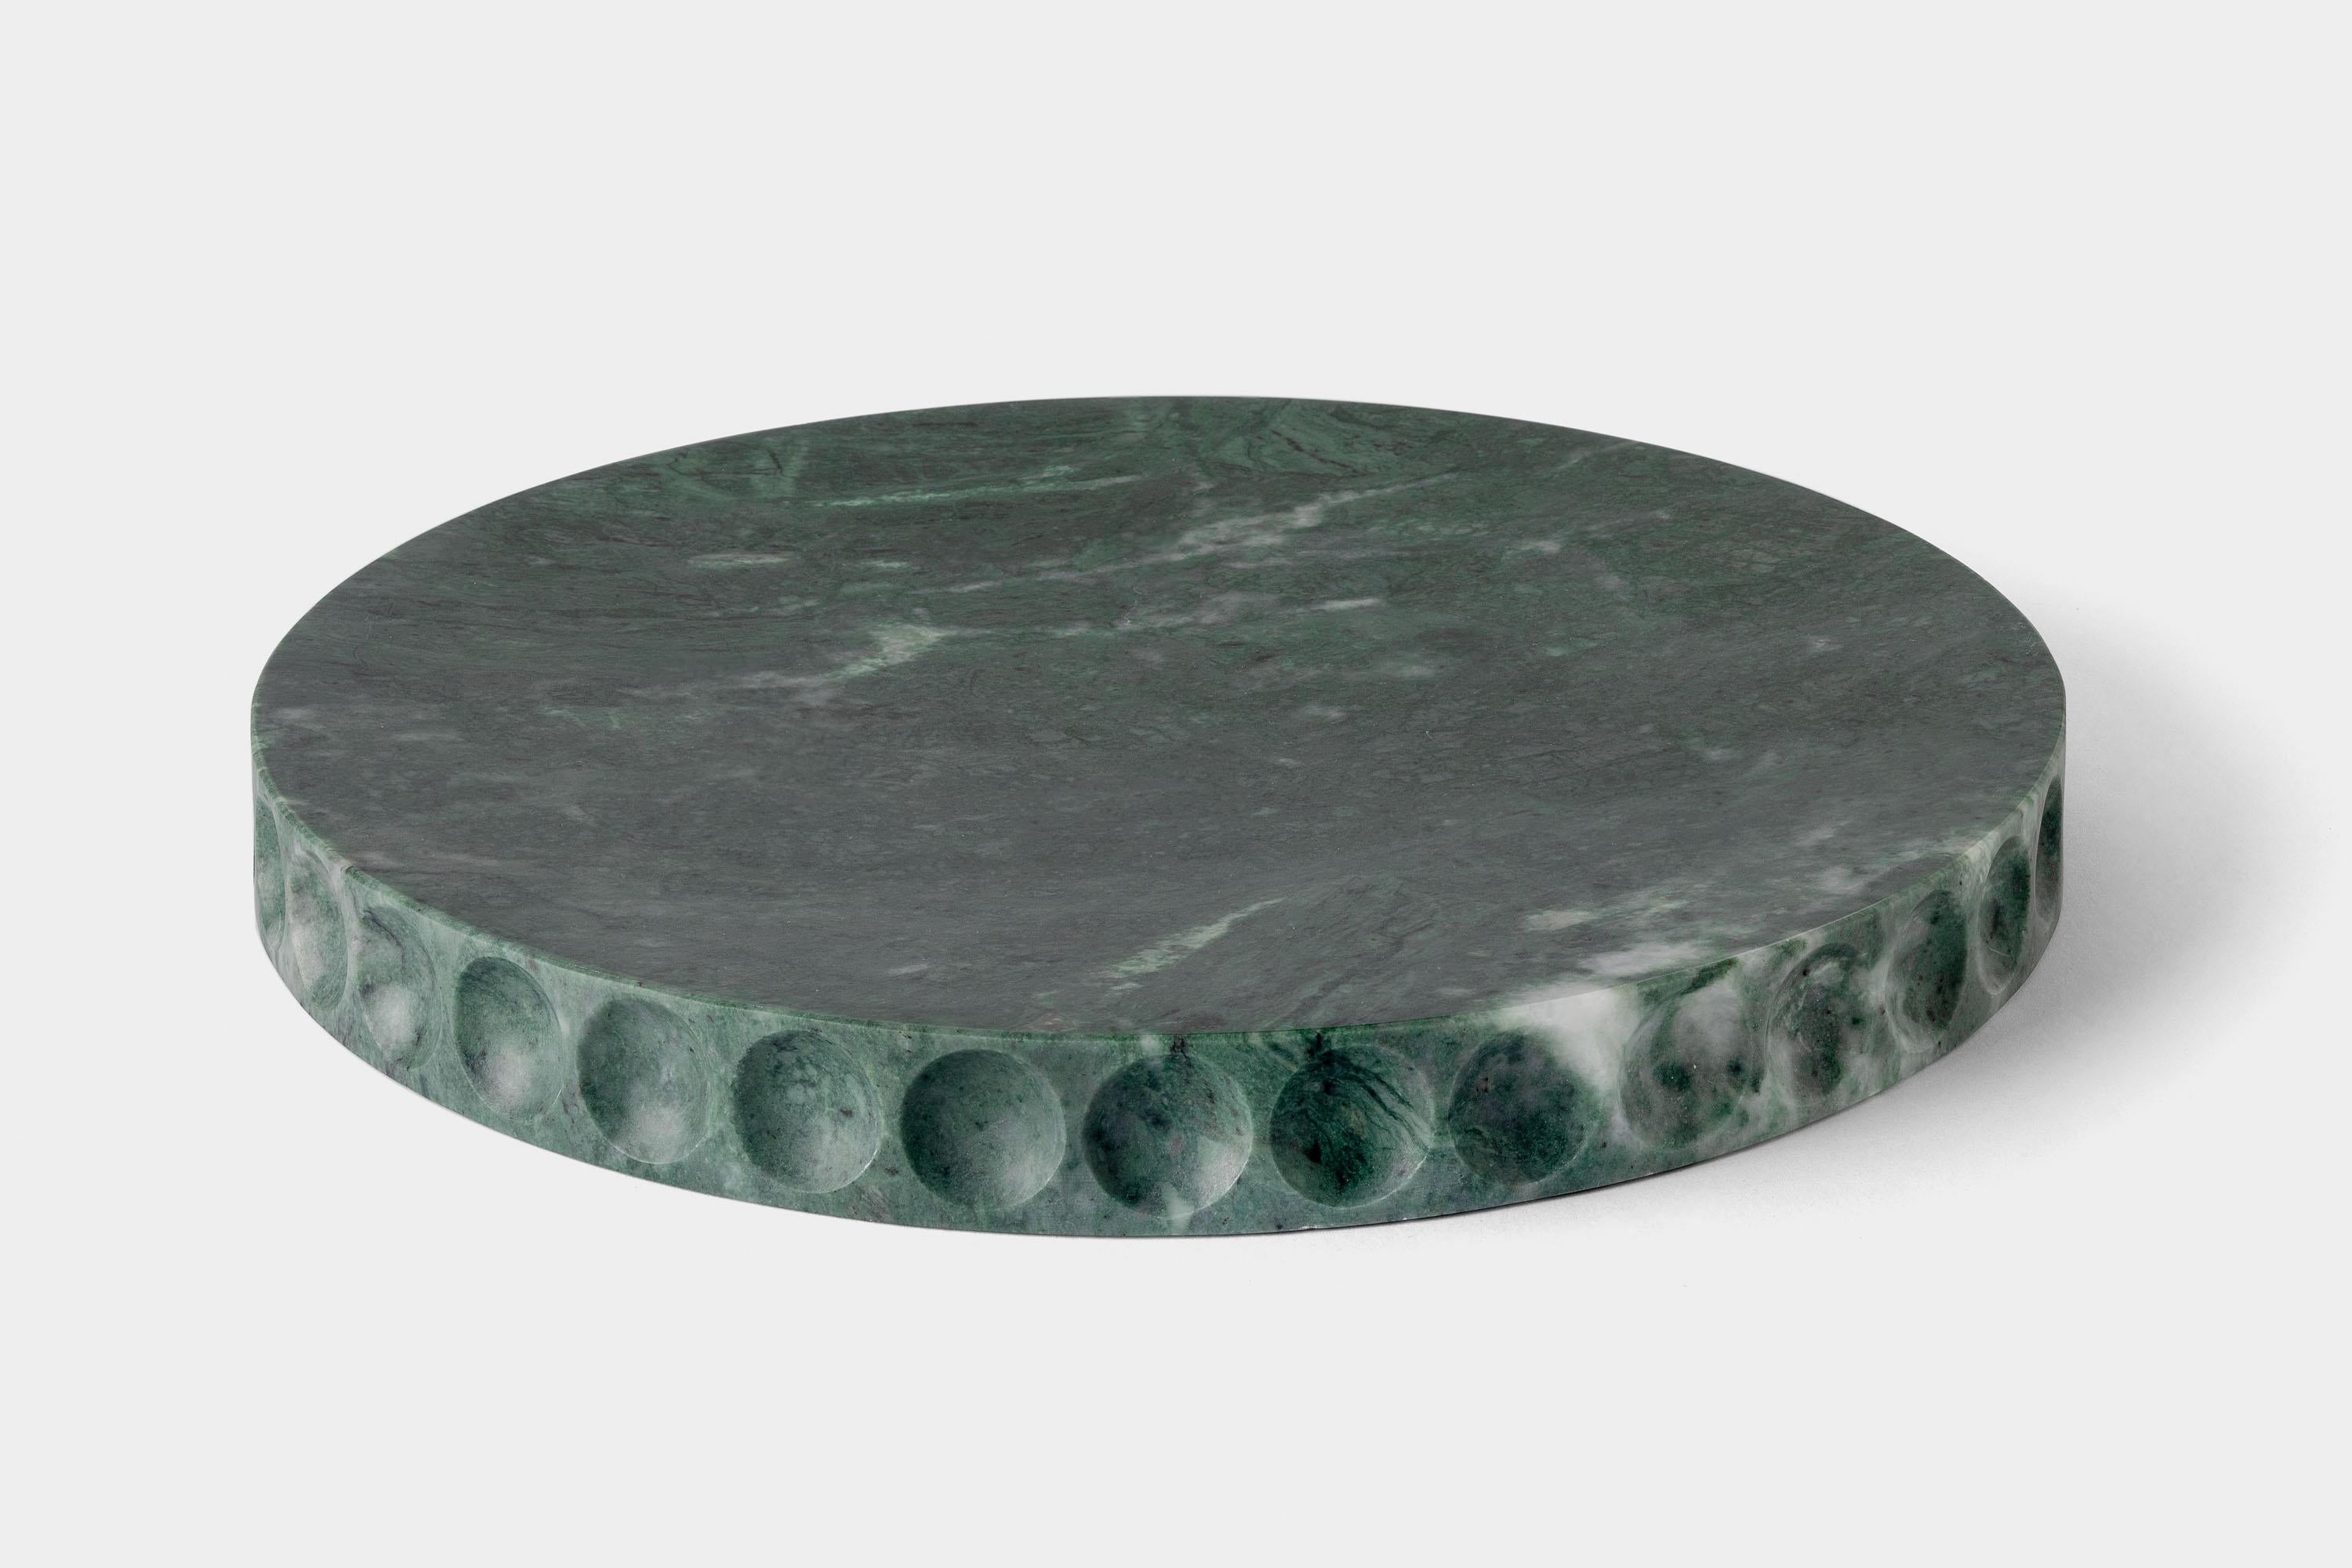 Mirage Lente by Studio Intervallo
Dimensions : D 30 x H 3,2 cm
MATERIAL : marbre vert du Guatemala.
Disponible dans d'autres pierres.

La collection Mirage est issue de la matérialité monolithique de la pierre. La forme et la fonction